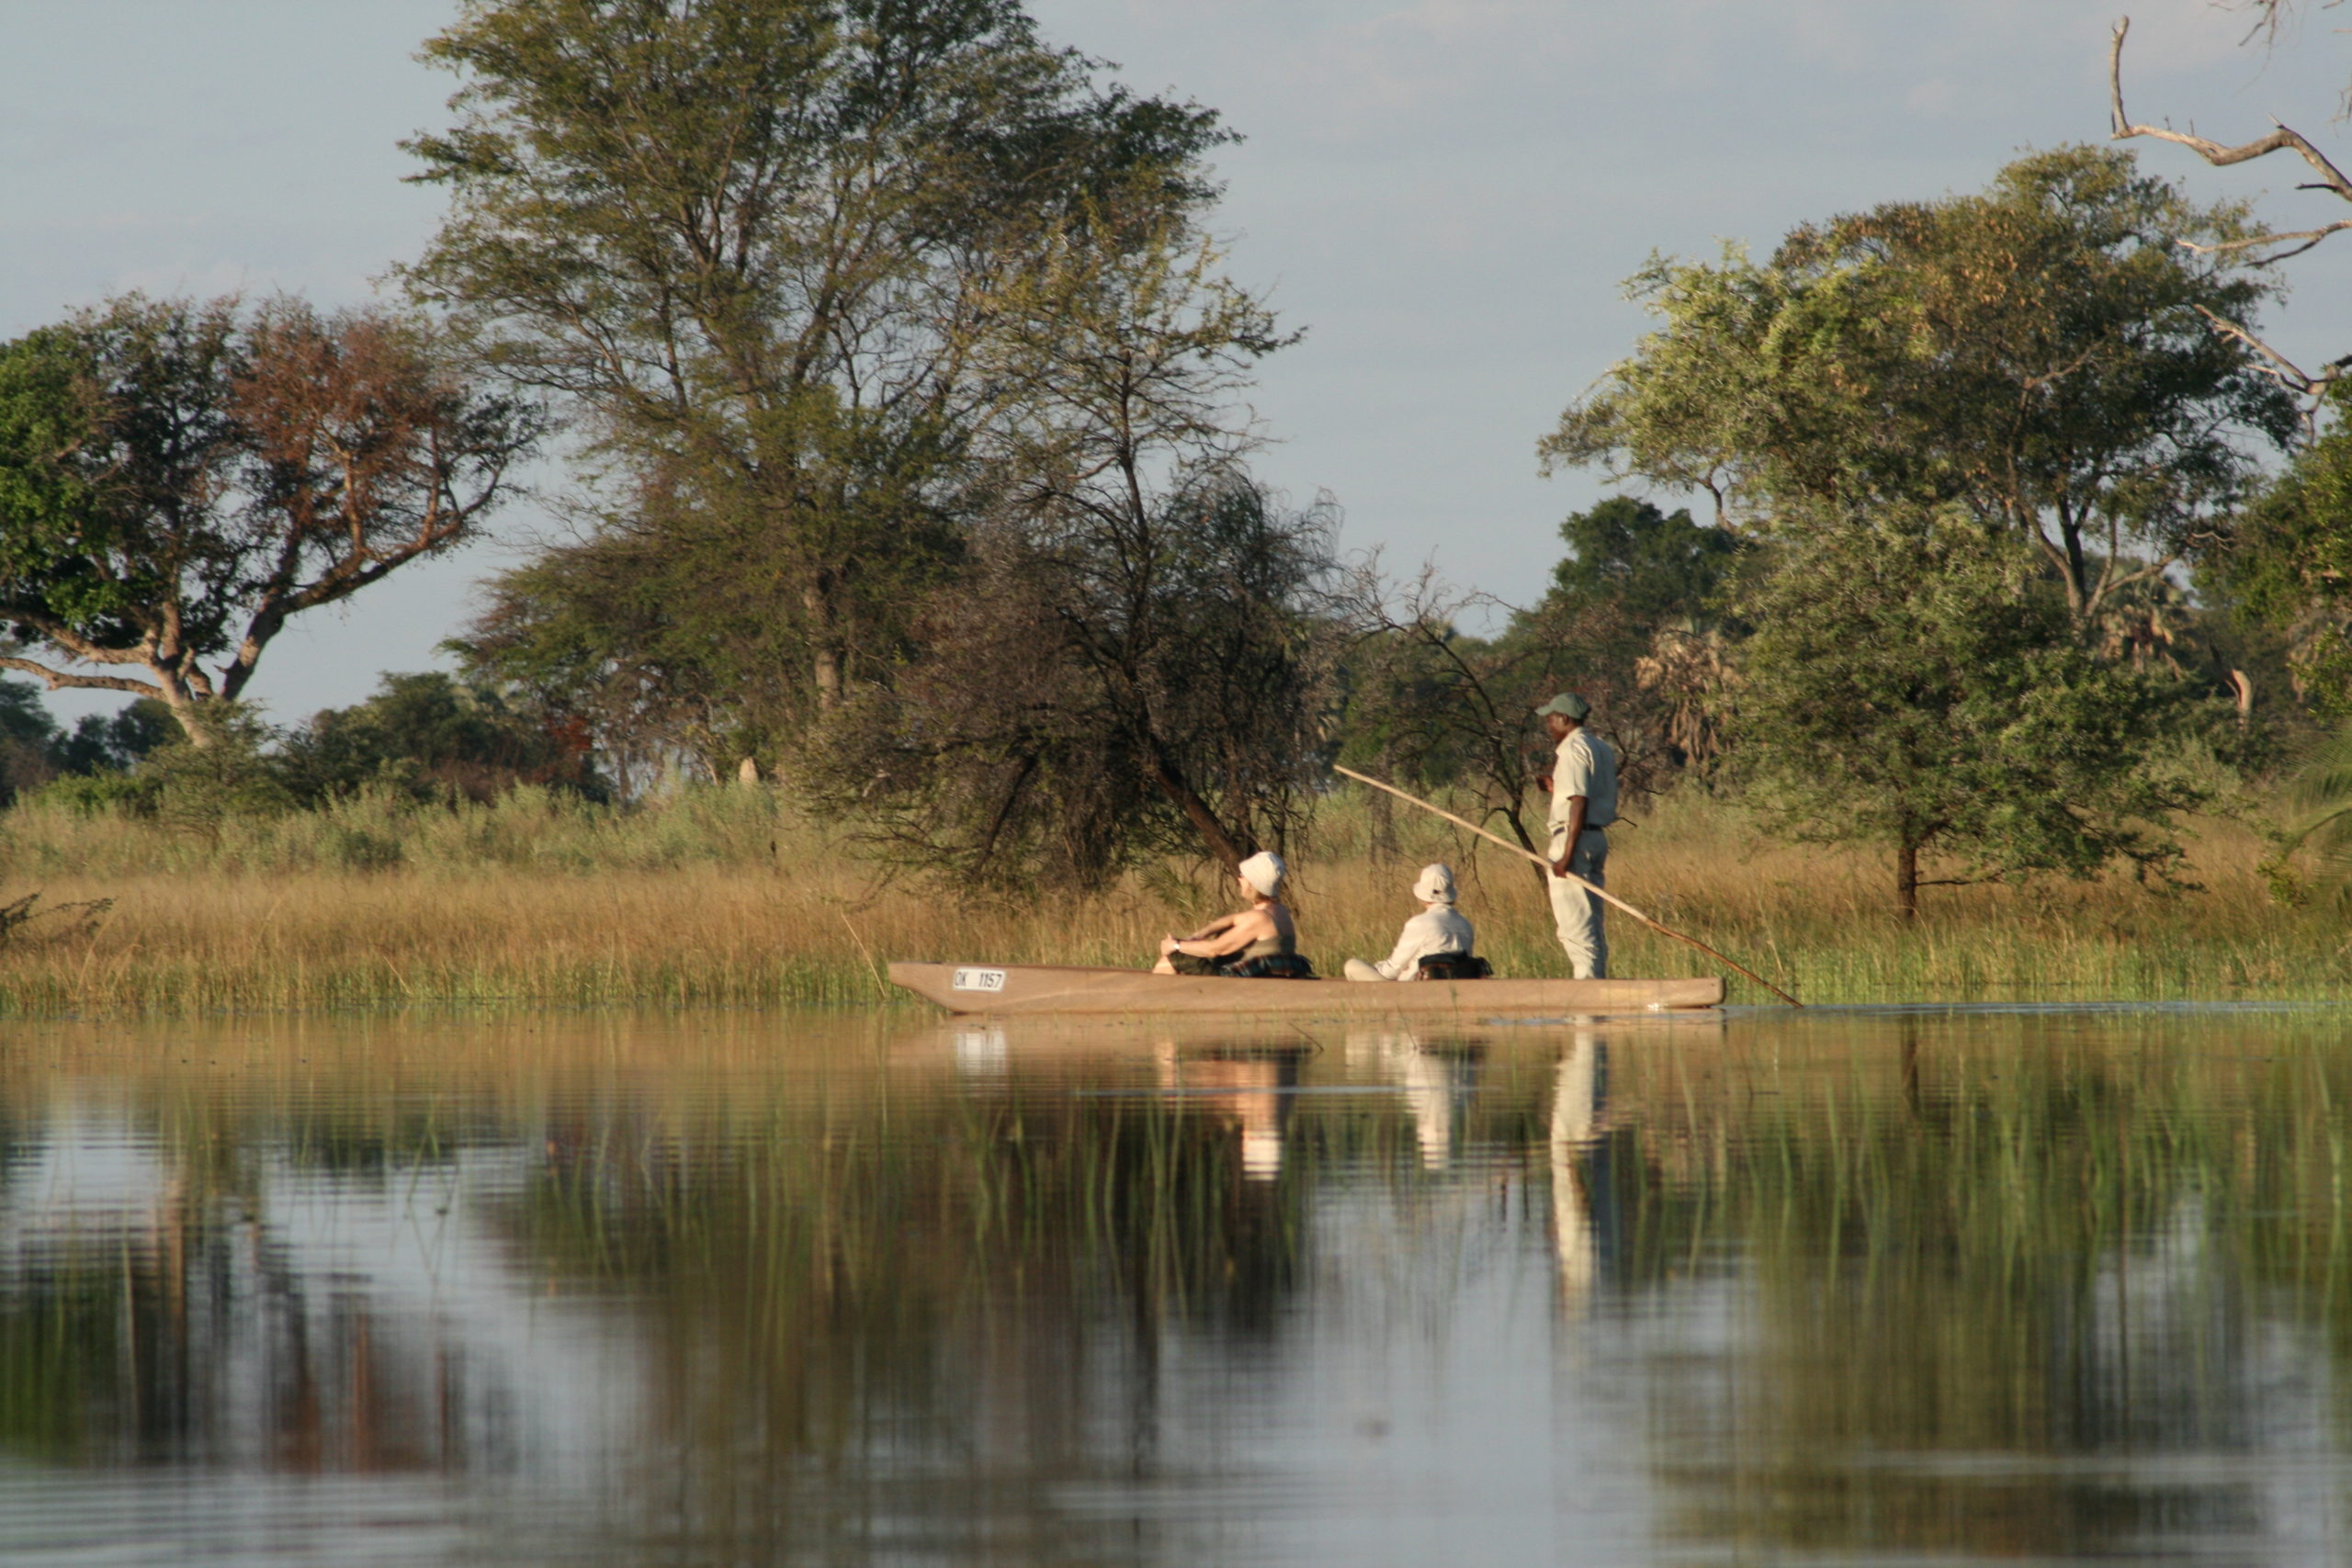 Erlebnis Botswana mit dem Okawango Delta und der Tierwelt - Bucketlist Reisen bei Boutique Reisen